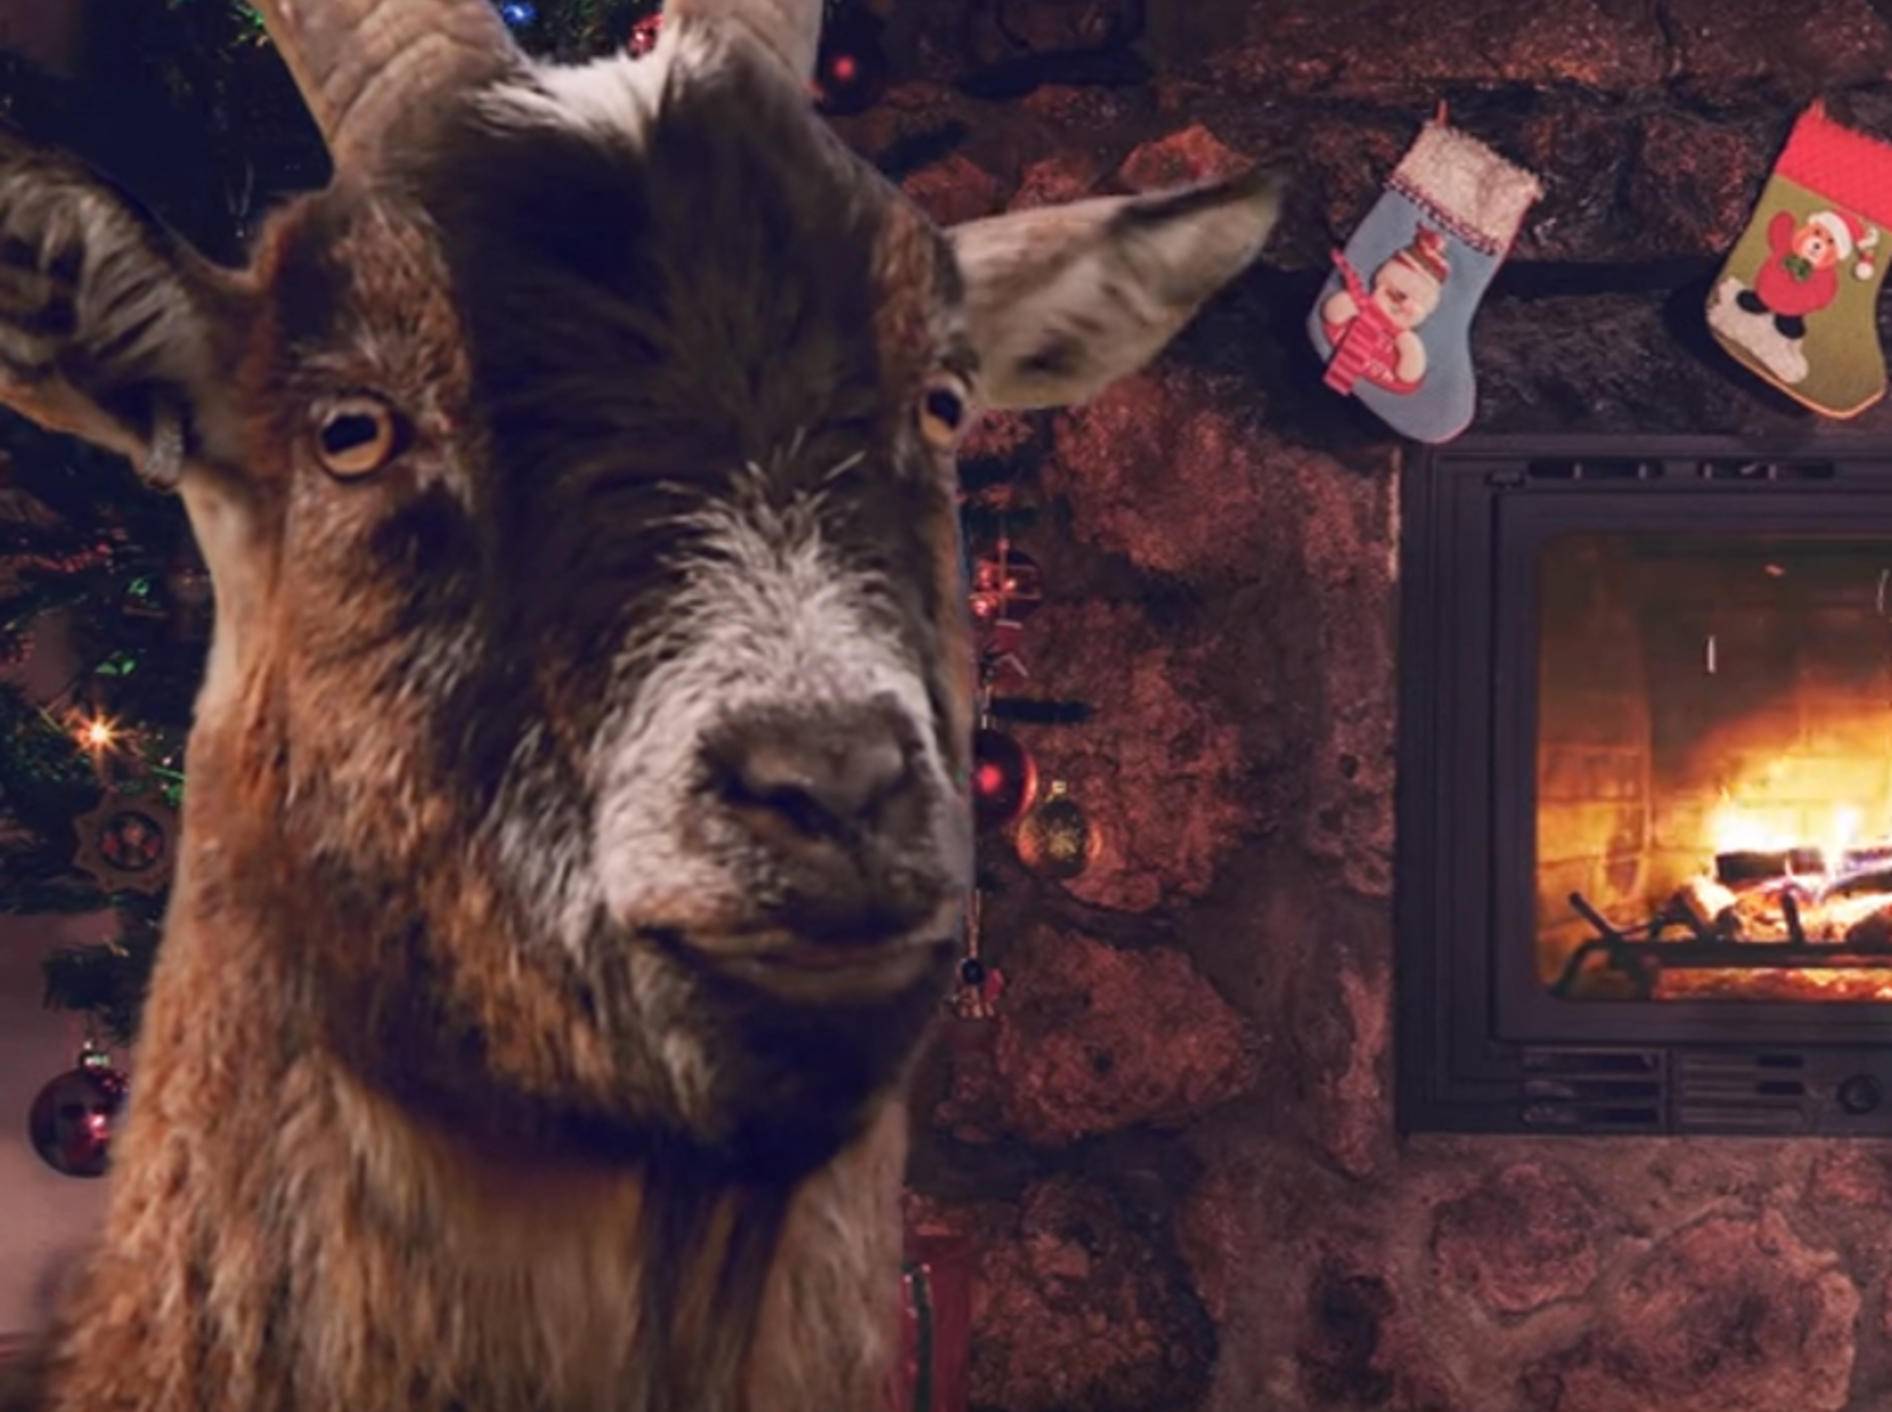 Määäähryyyy Christmas! Ziegen blöken Weihnachtsklassiker – Bild: YouTube / ActionAidSweden